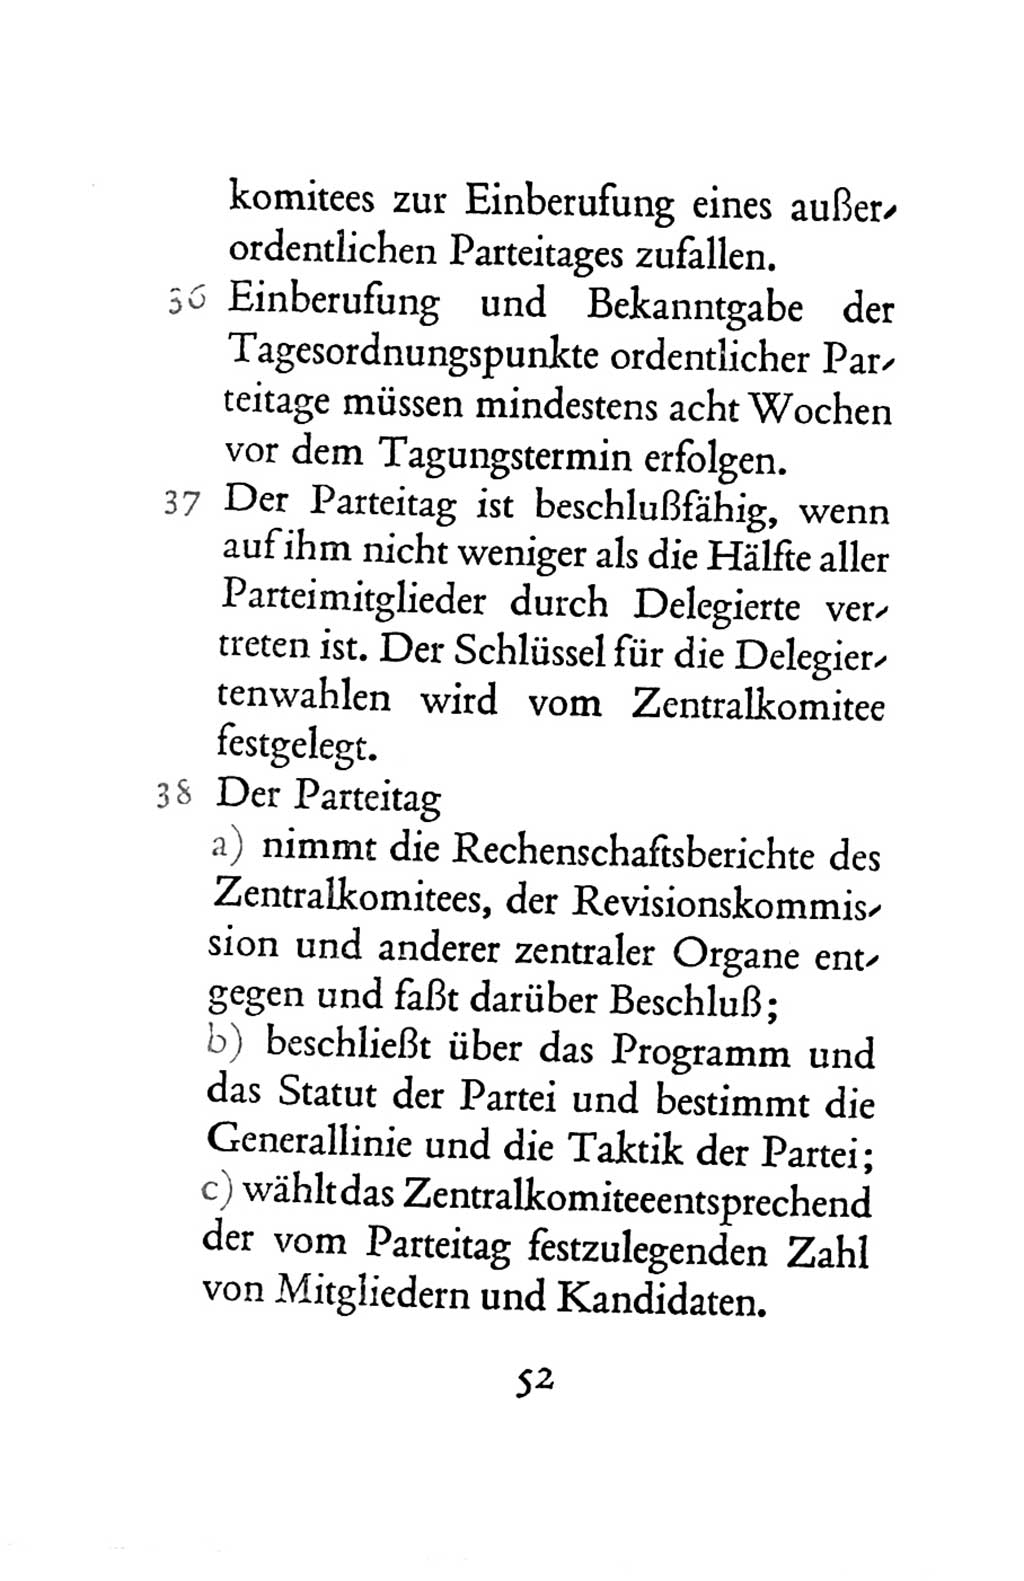 Statut der Sozialistischen Einheitspartei Deutschlands (SED) 1963, Seite 52 (St. SED DDR 1963, S. 52)